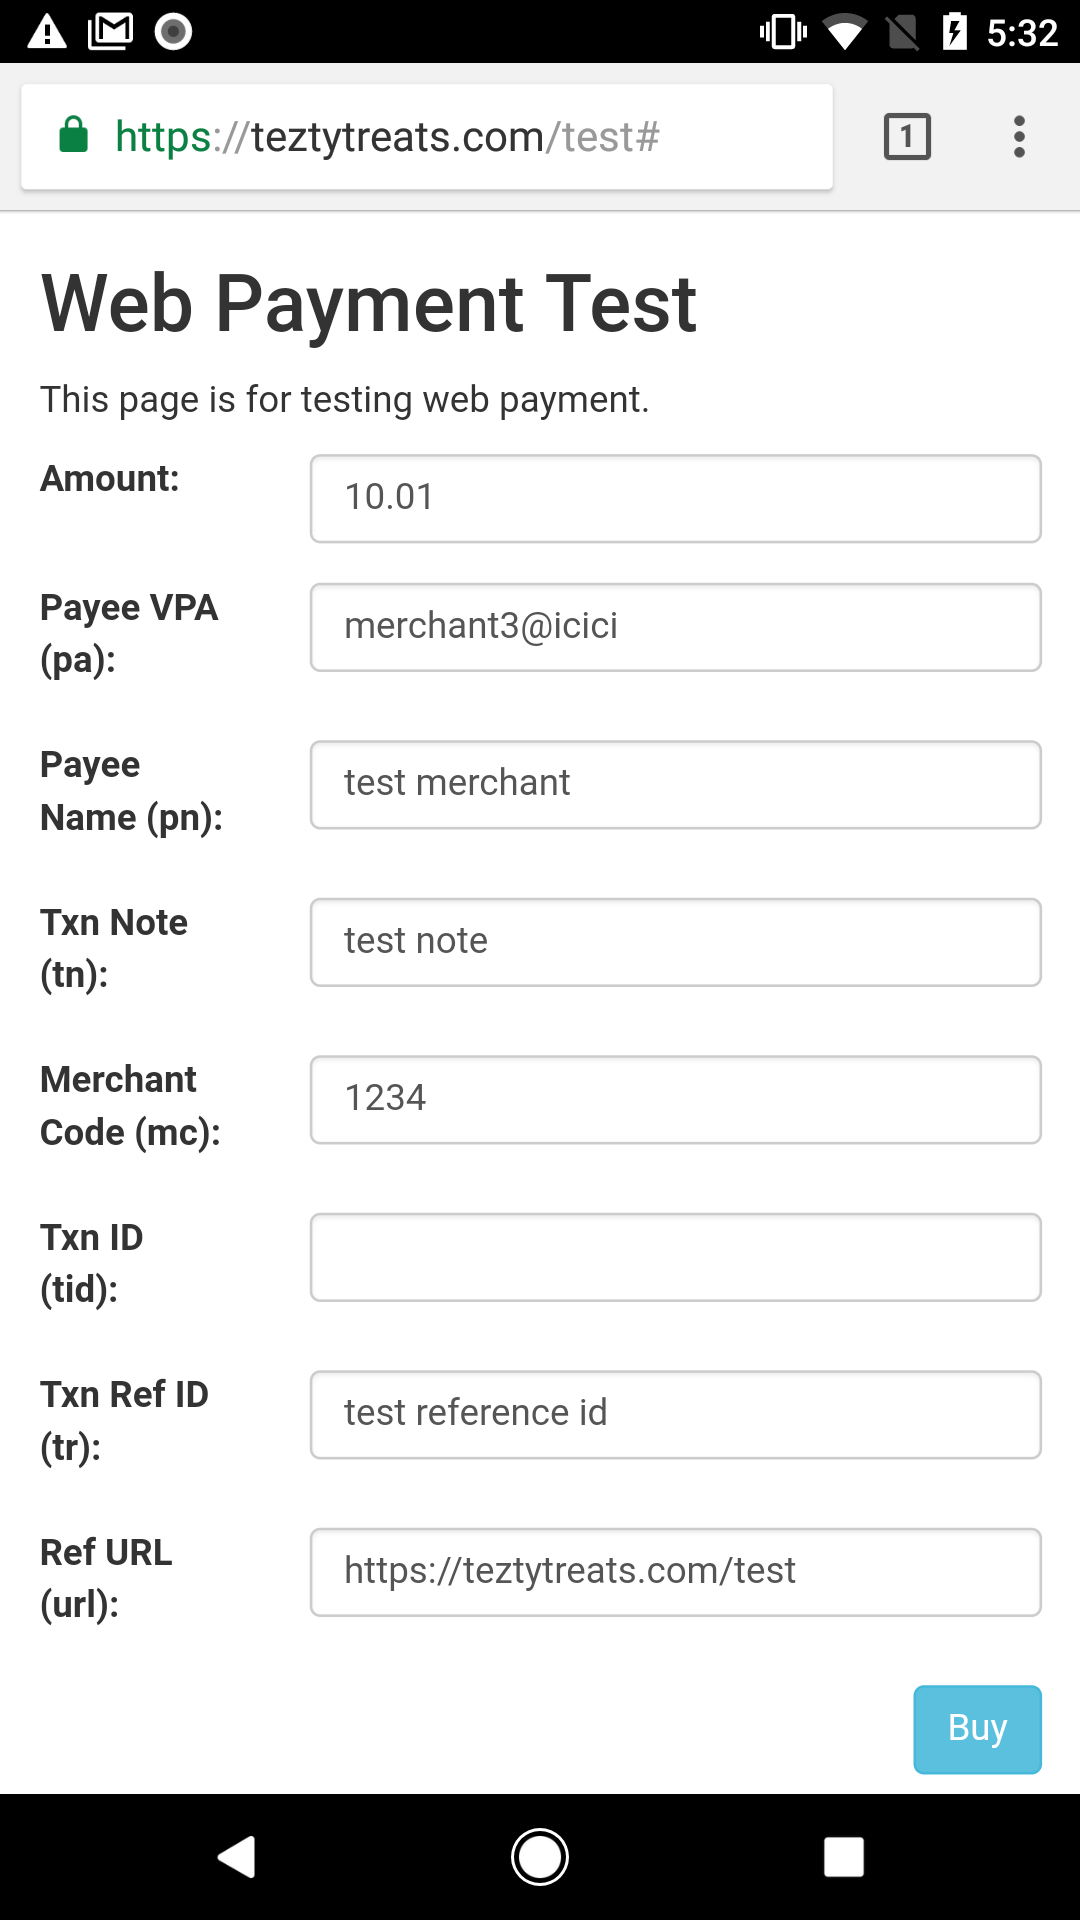 Web payment details form